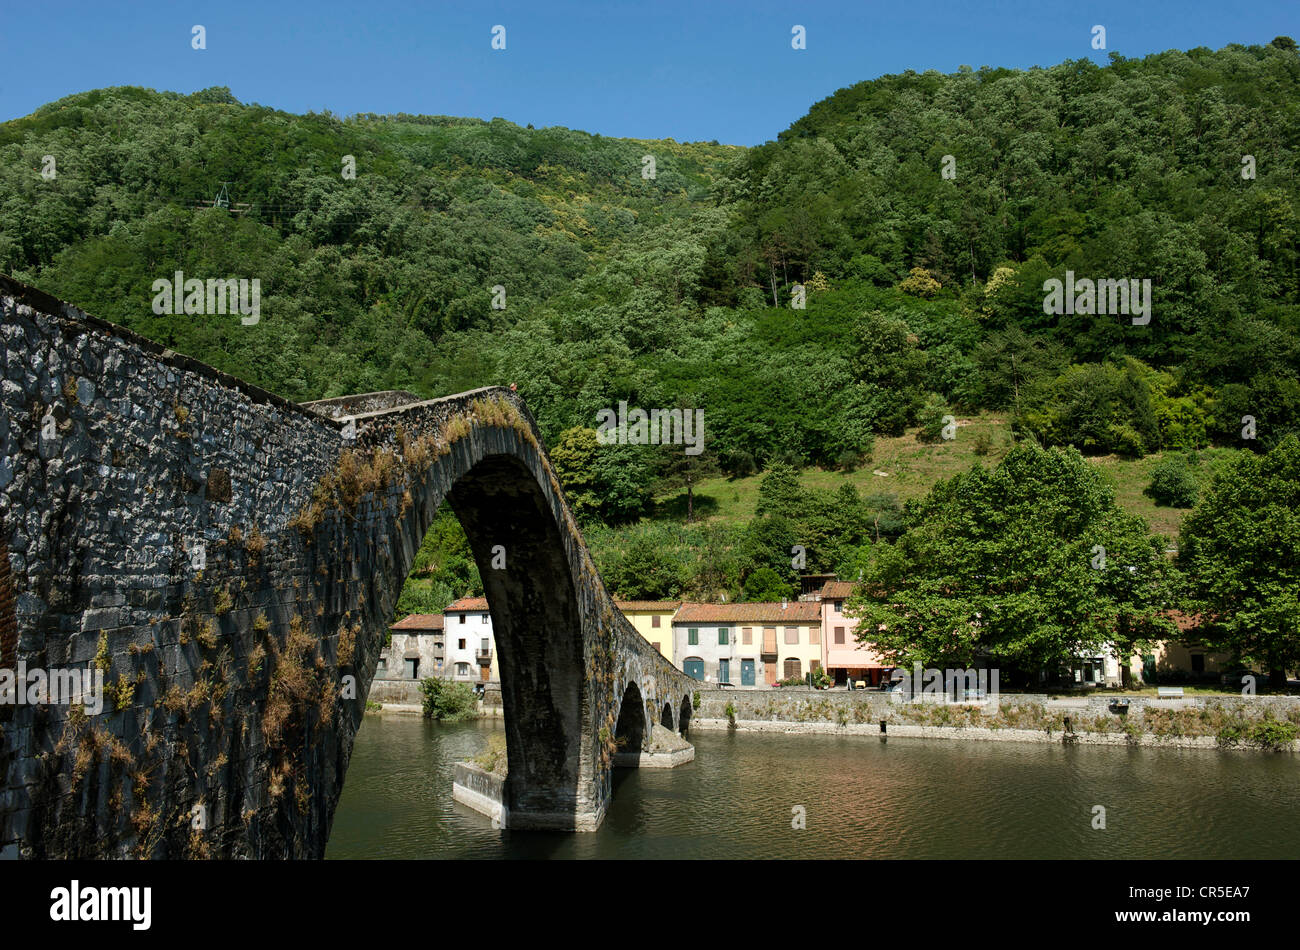 Italy, Tuscany, Garfagnana area, Borgo a Mozzano, Ponte della Maddalena or Ponte del Diavolo (Devil's Bridge) over Serchio River Stock Photo